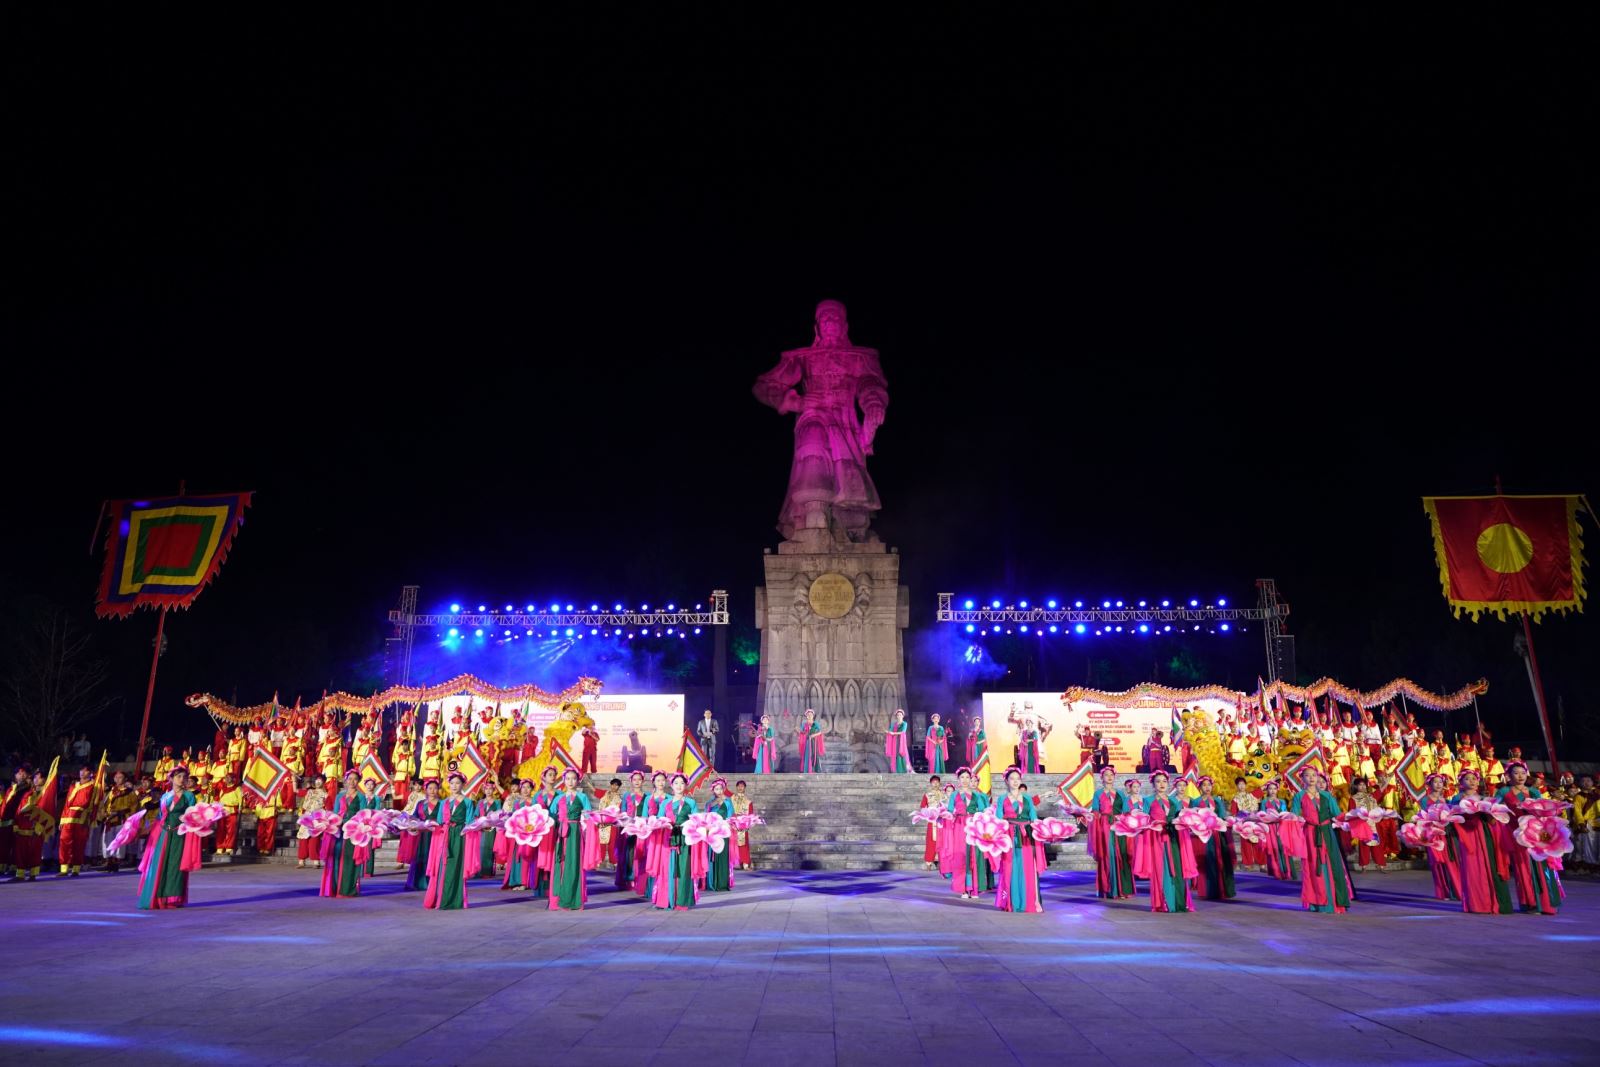 Chương trình Lễ kỷ niệm 235 năm ngày Nguyễn Huệ lên ngôi Hoàng đế.